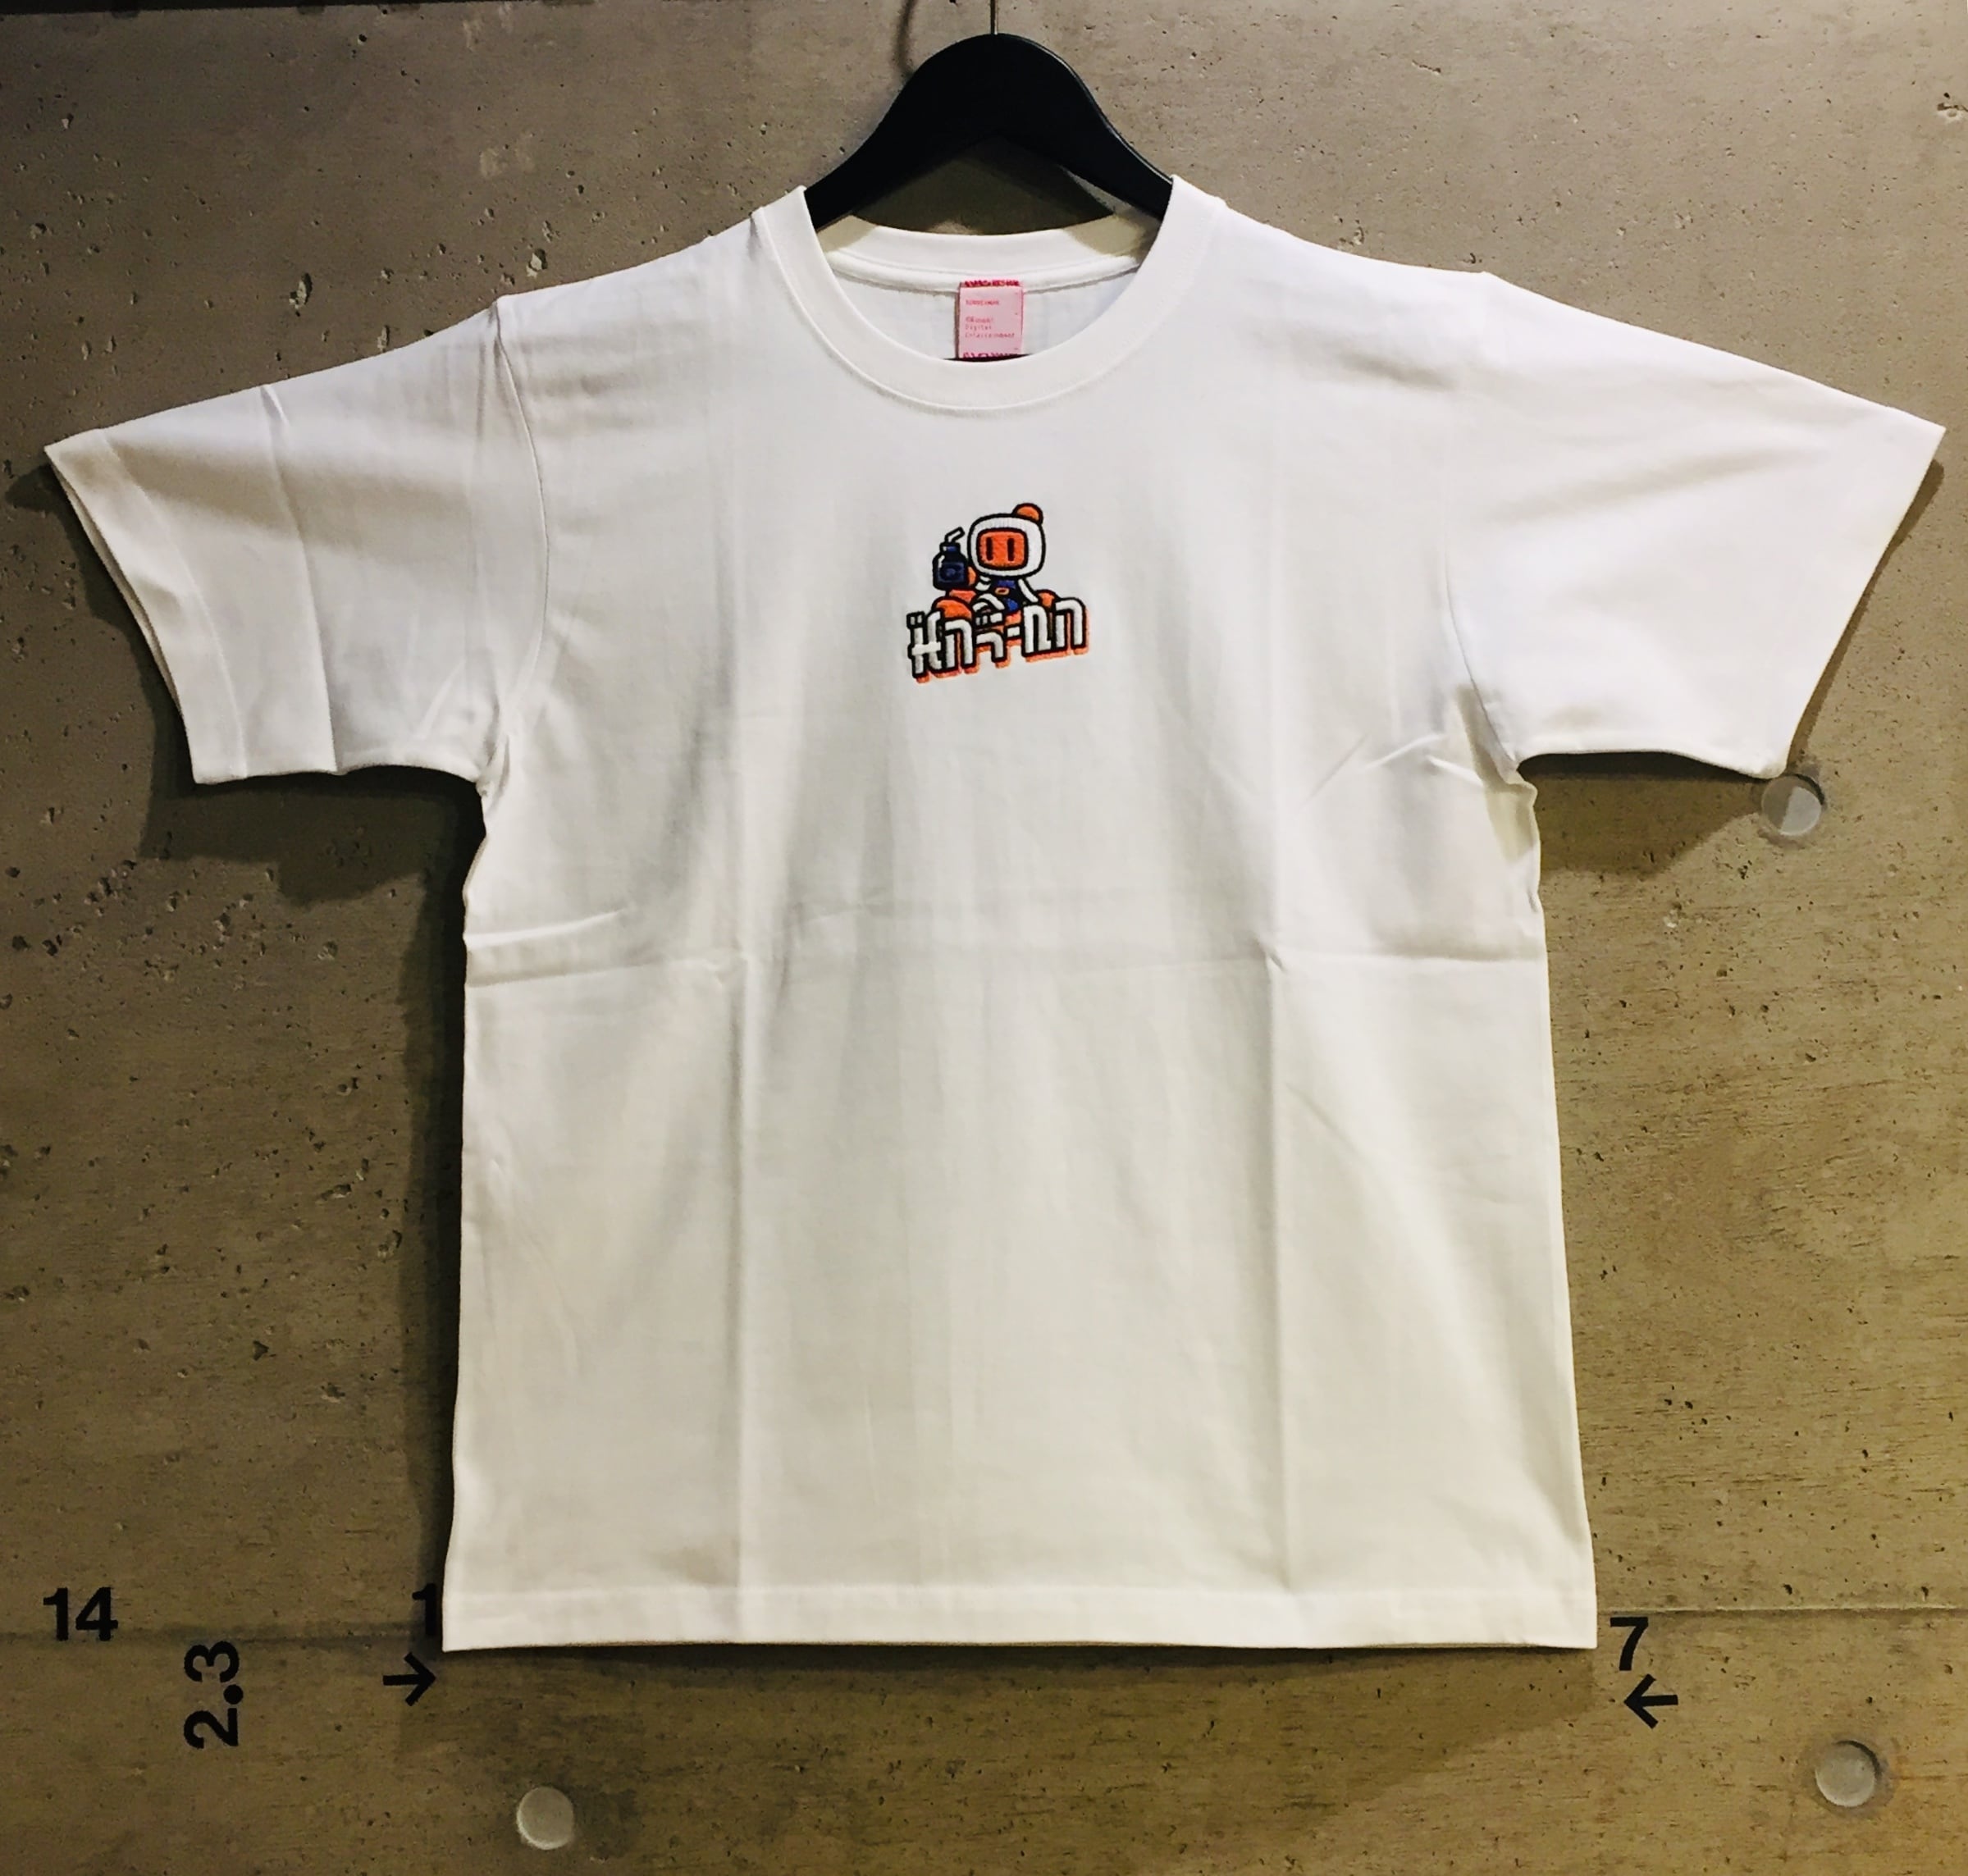 ボンバーマン 刺繍Tシャツ / VIDEO GAME TOKYO